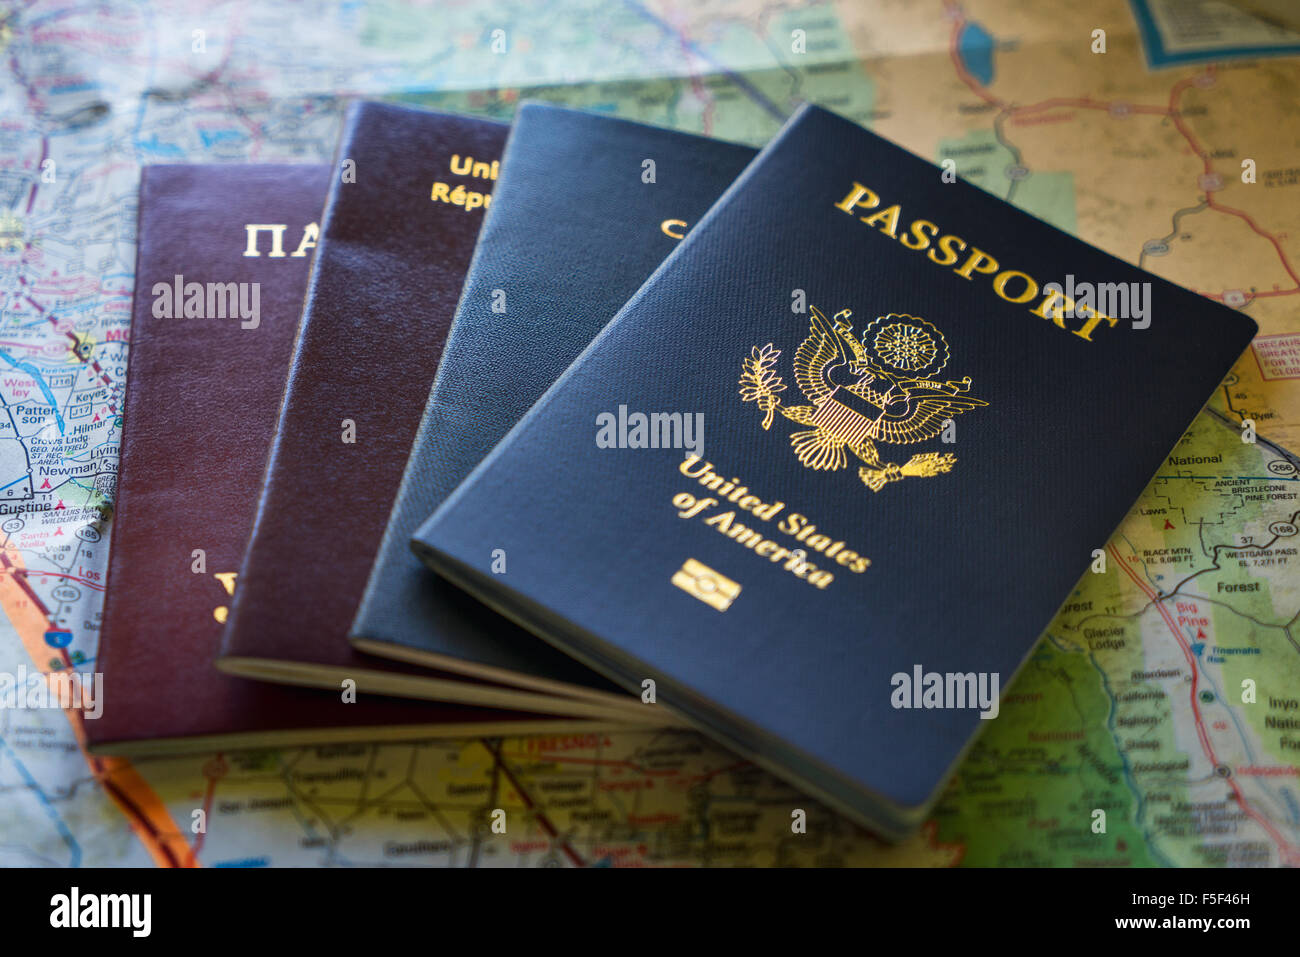 A set of international passports sitting on a map Stock Photo